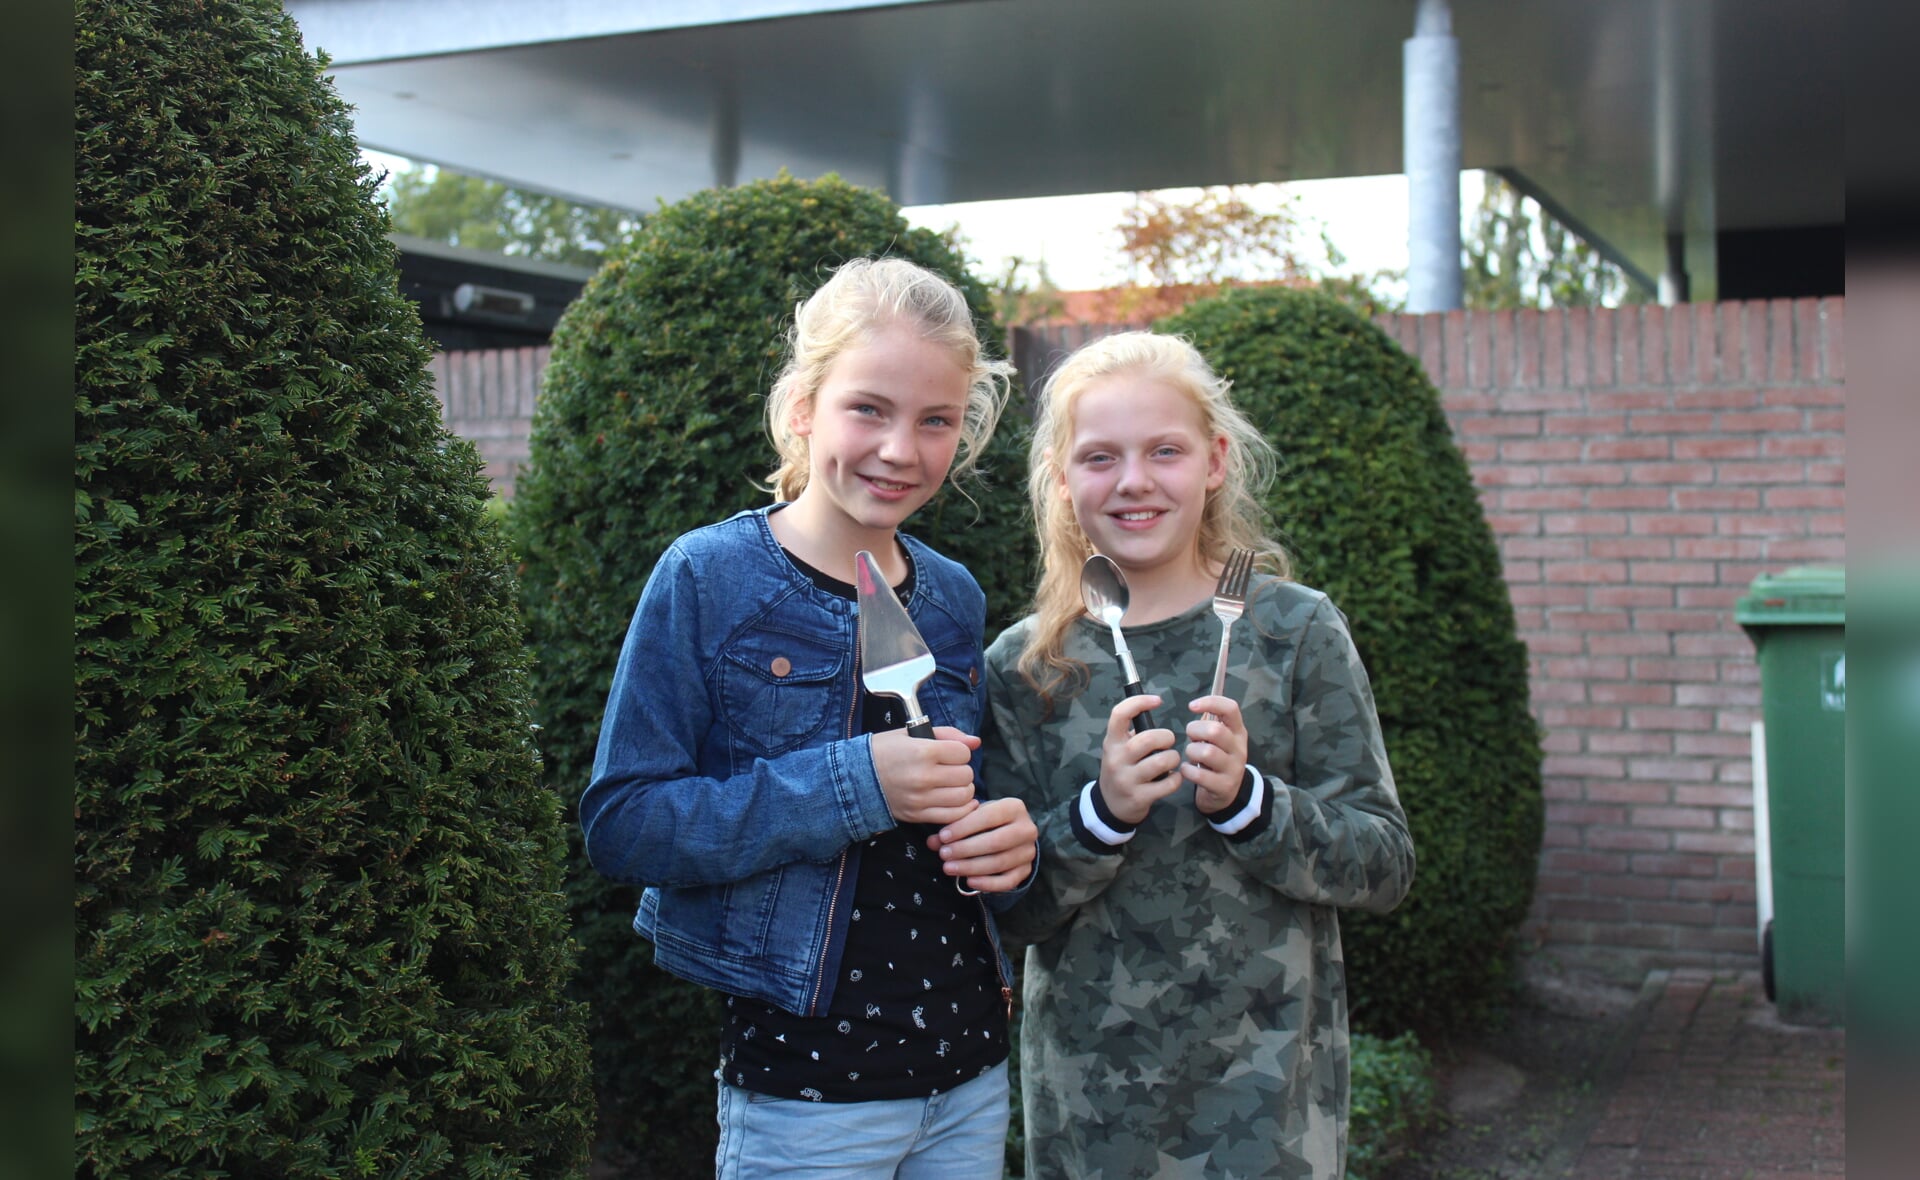 Faye van der Steen en Roos Arts vertegenwoordigen de gemeente Boxtel in kinderkookwedstrijd Keukenbazen.